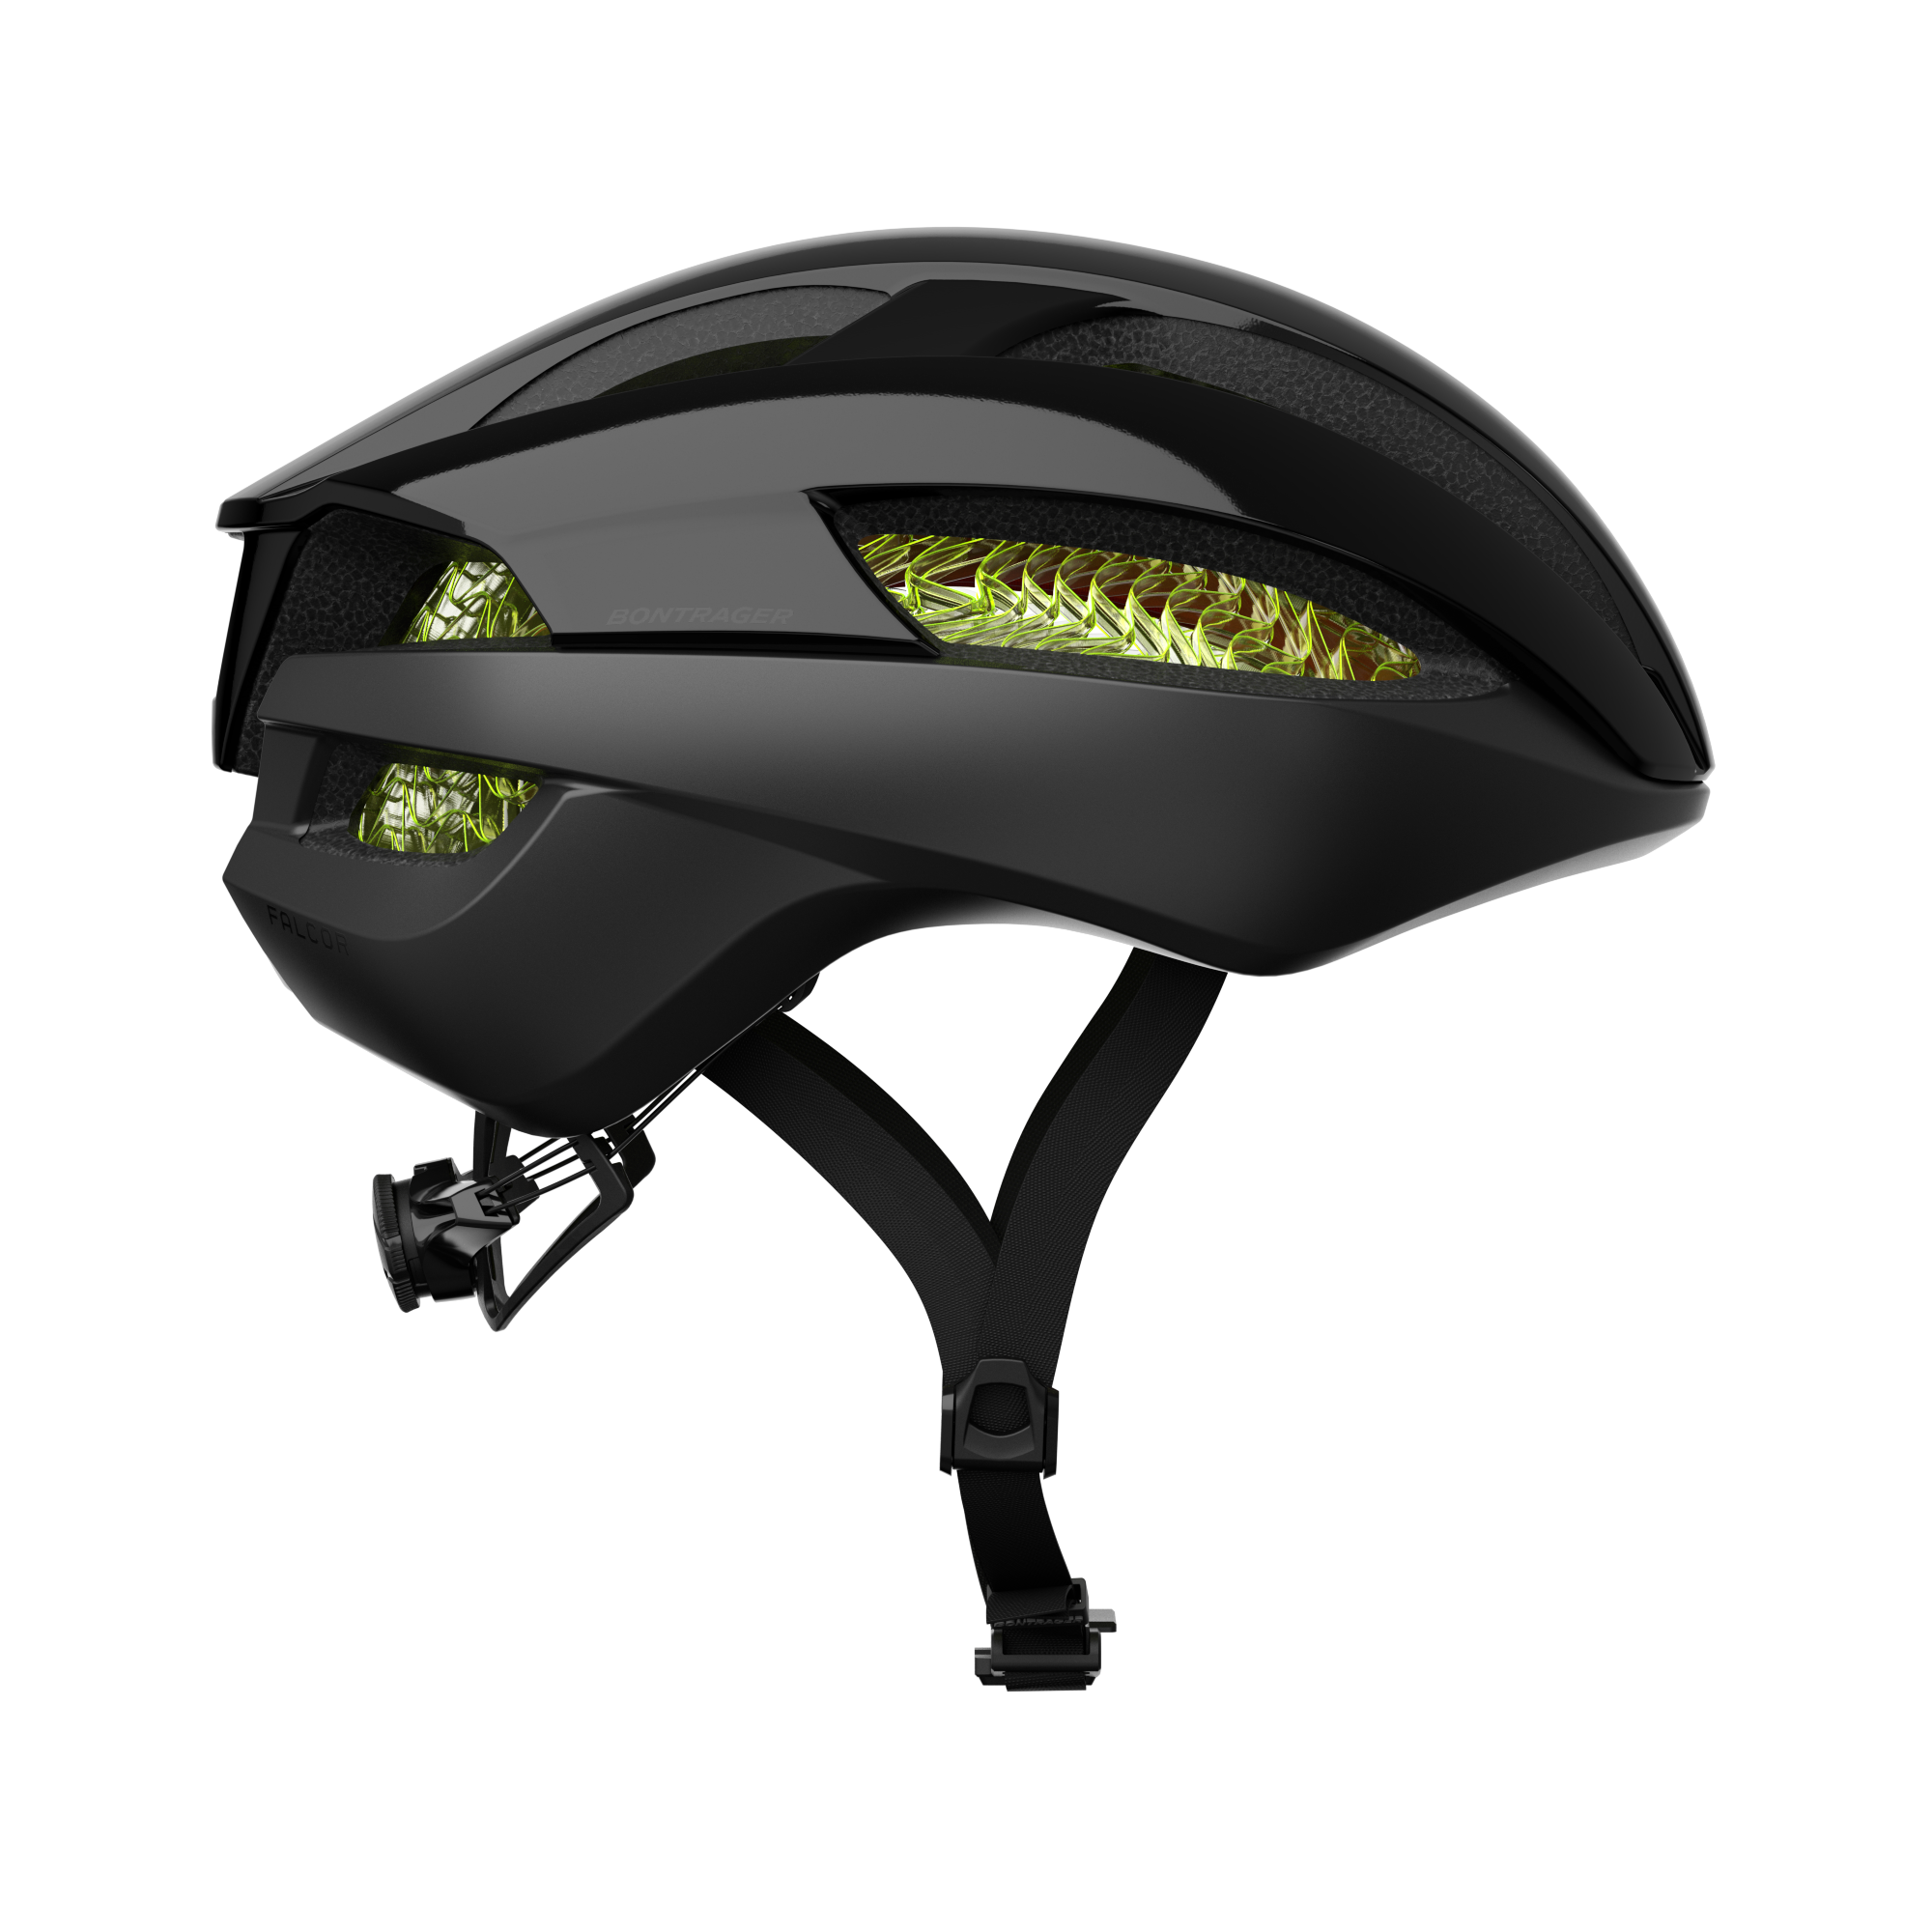 WaveCel technology is inside helmets from Bontrager/Trek